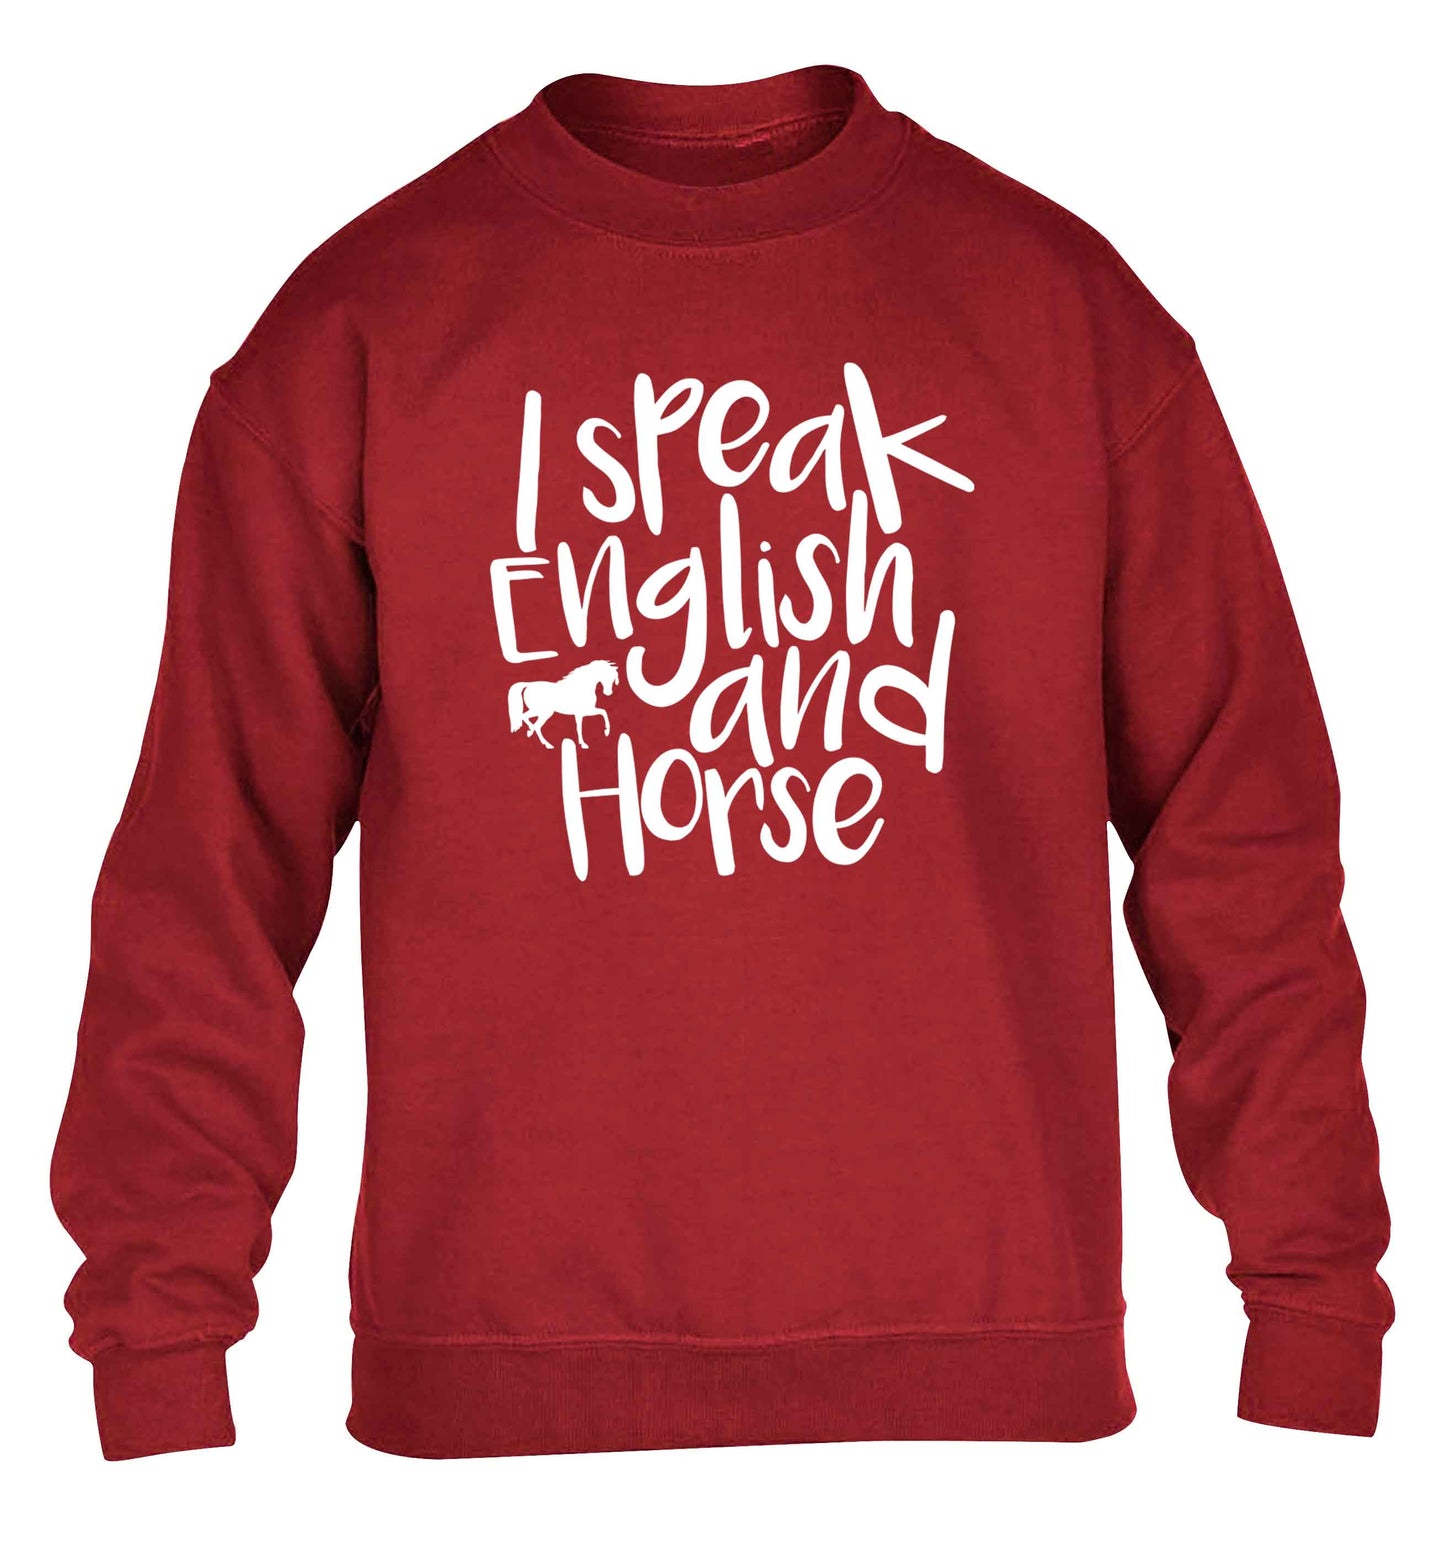 I speak English and horse children's grey sweater 12-13 Years